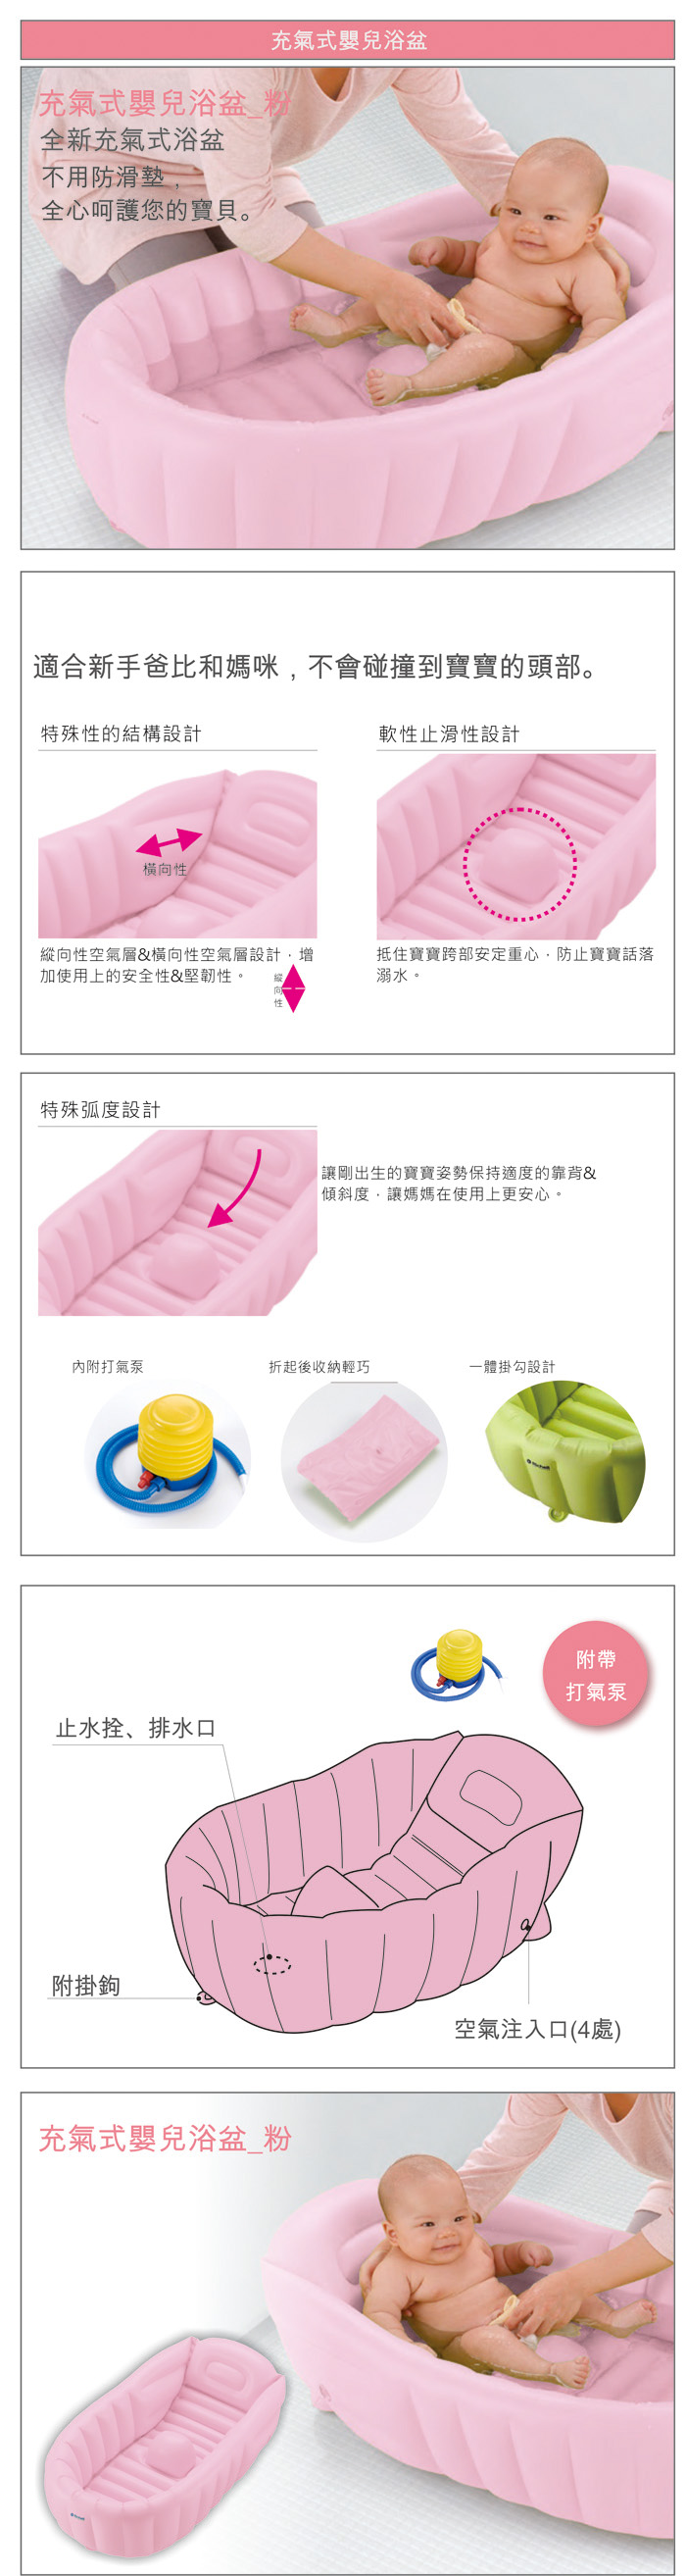 Richell利其爾-充氣式嬰兒浴盆(綠色/粉色)